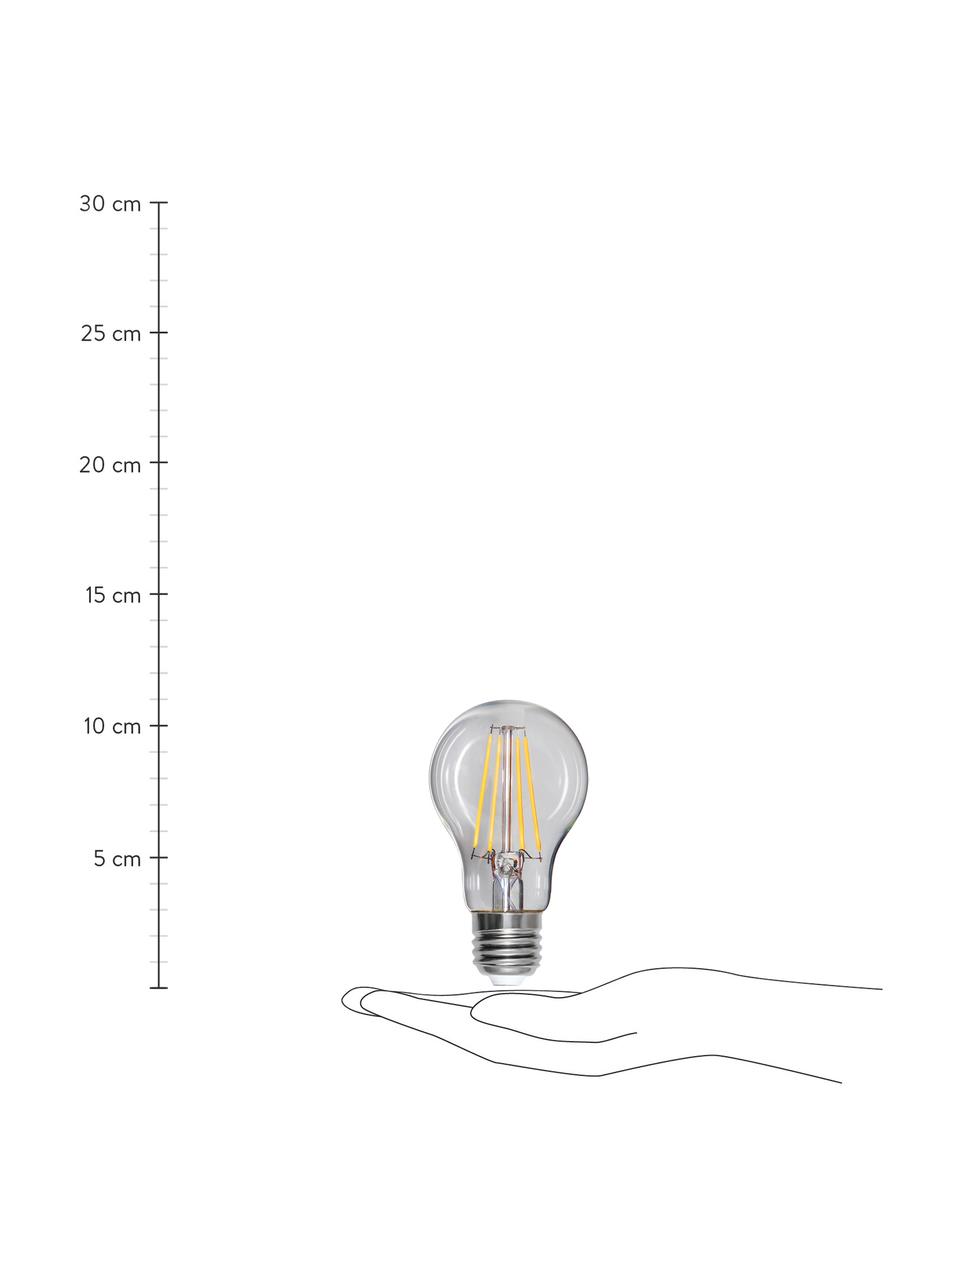 Ampoule (E27 - 1000 lm), blanc chaud, intensité variable, 1 pièce, Transparent